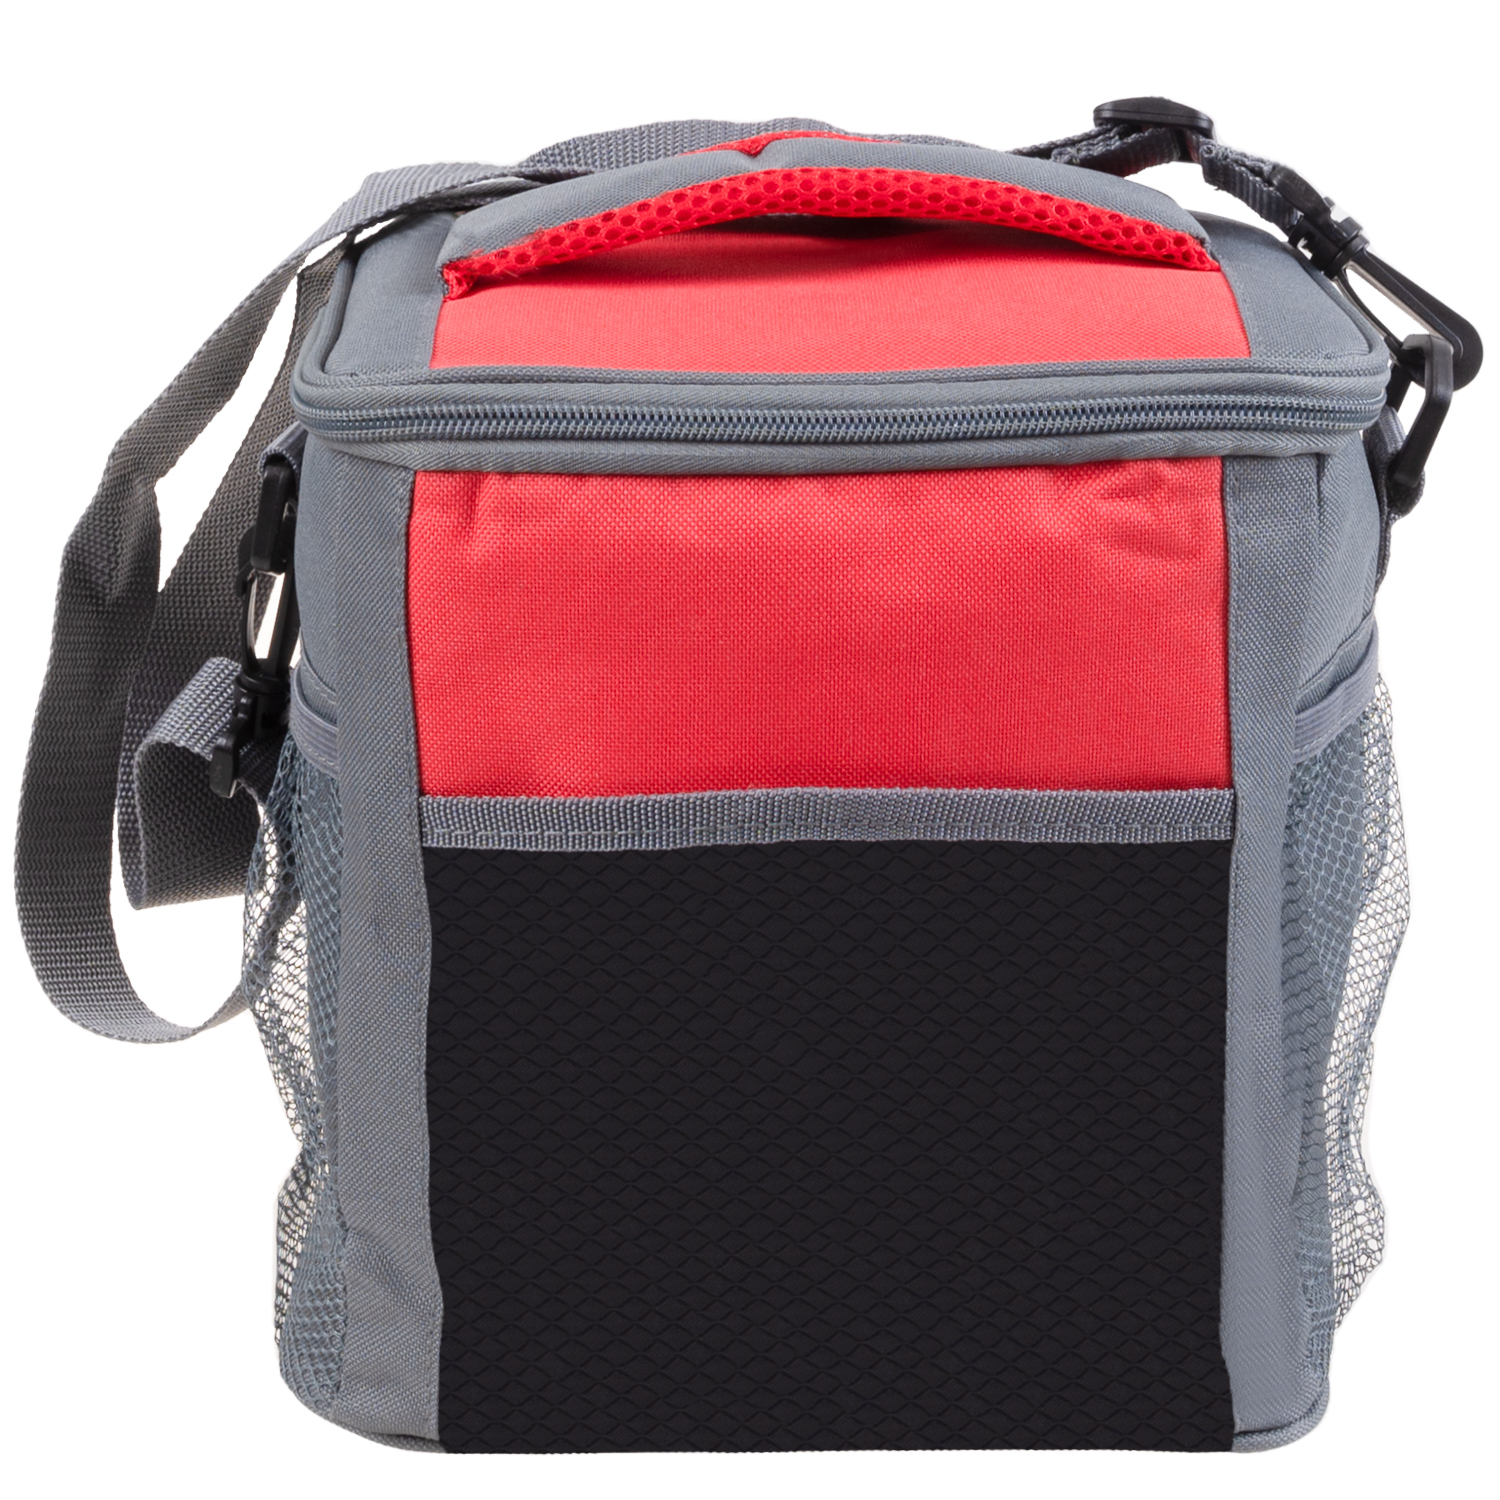 Petit sac isotherme, capacité 12 canettes - Rouge. Colour: red, Fr